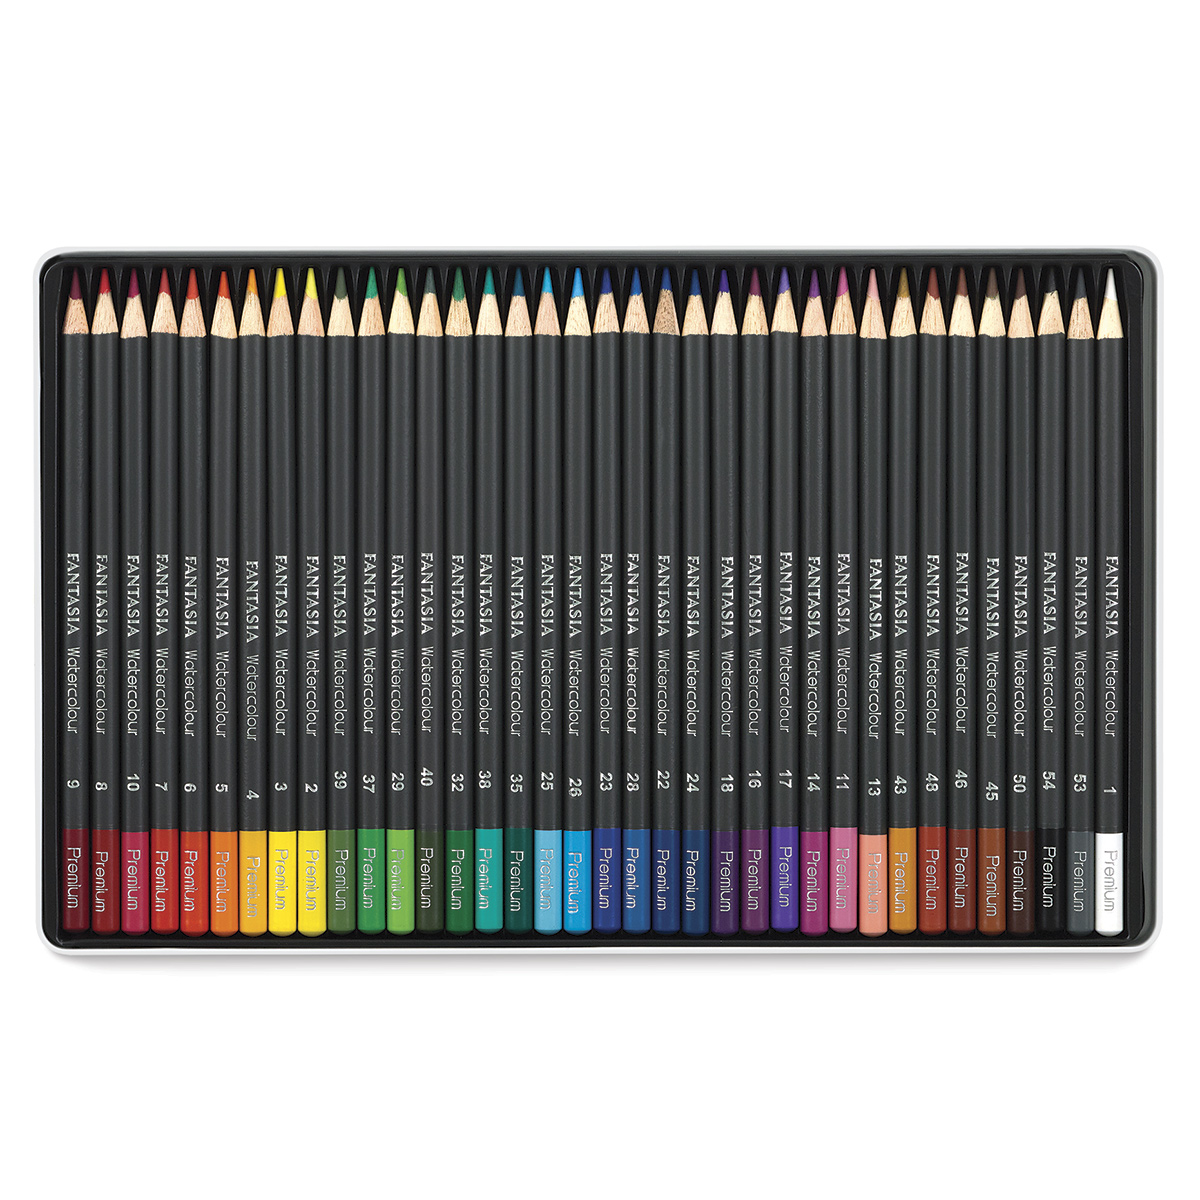 Fantasia Set of 12 Coloured Pencils